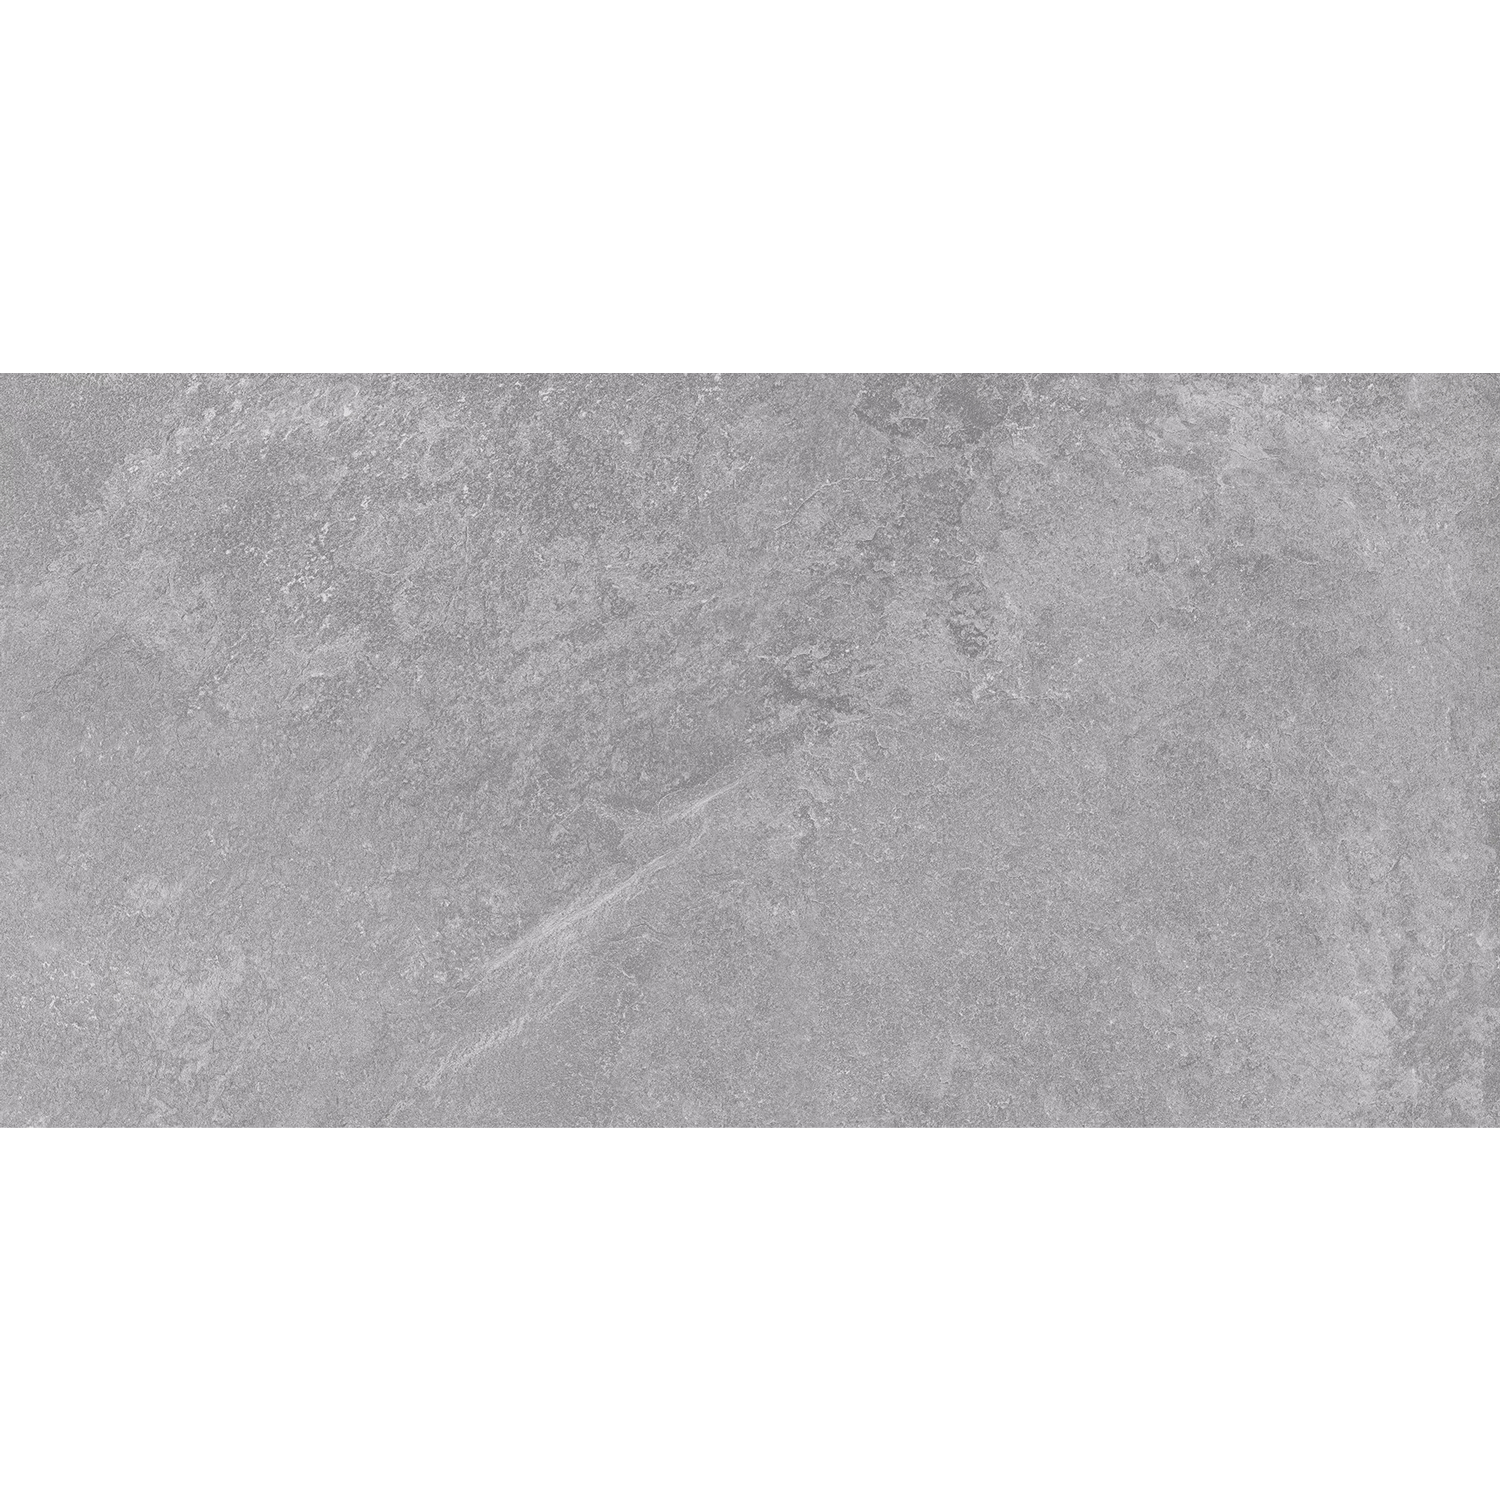 淺石灰石紋磚R1106S6X1013525022